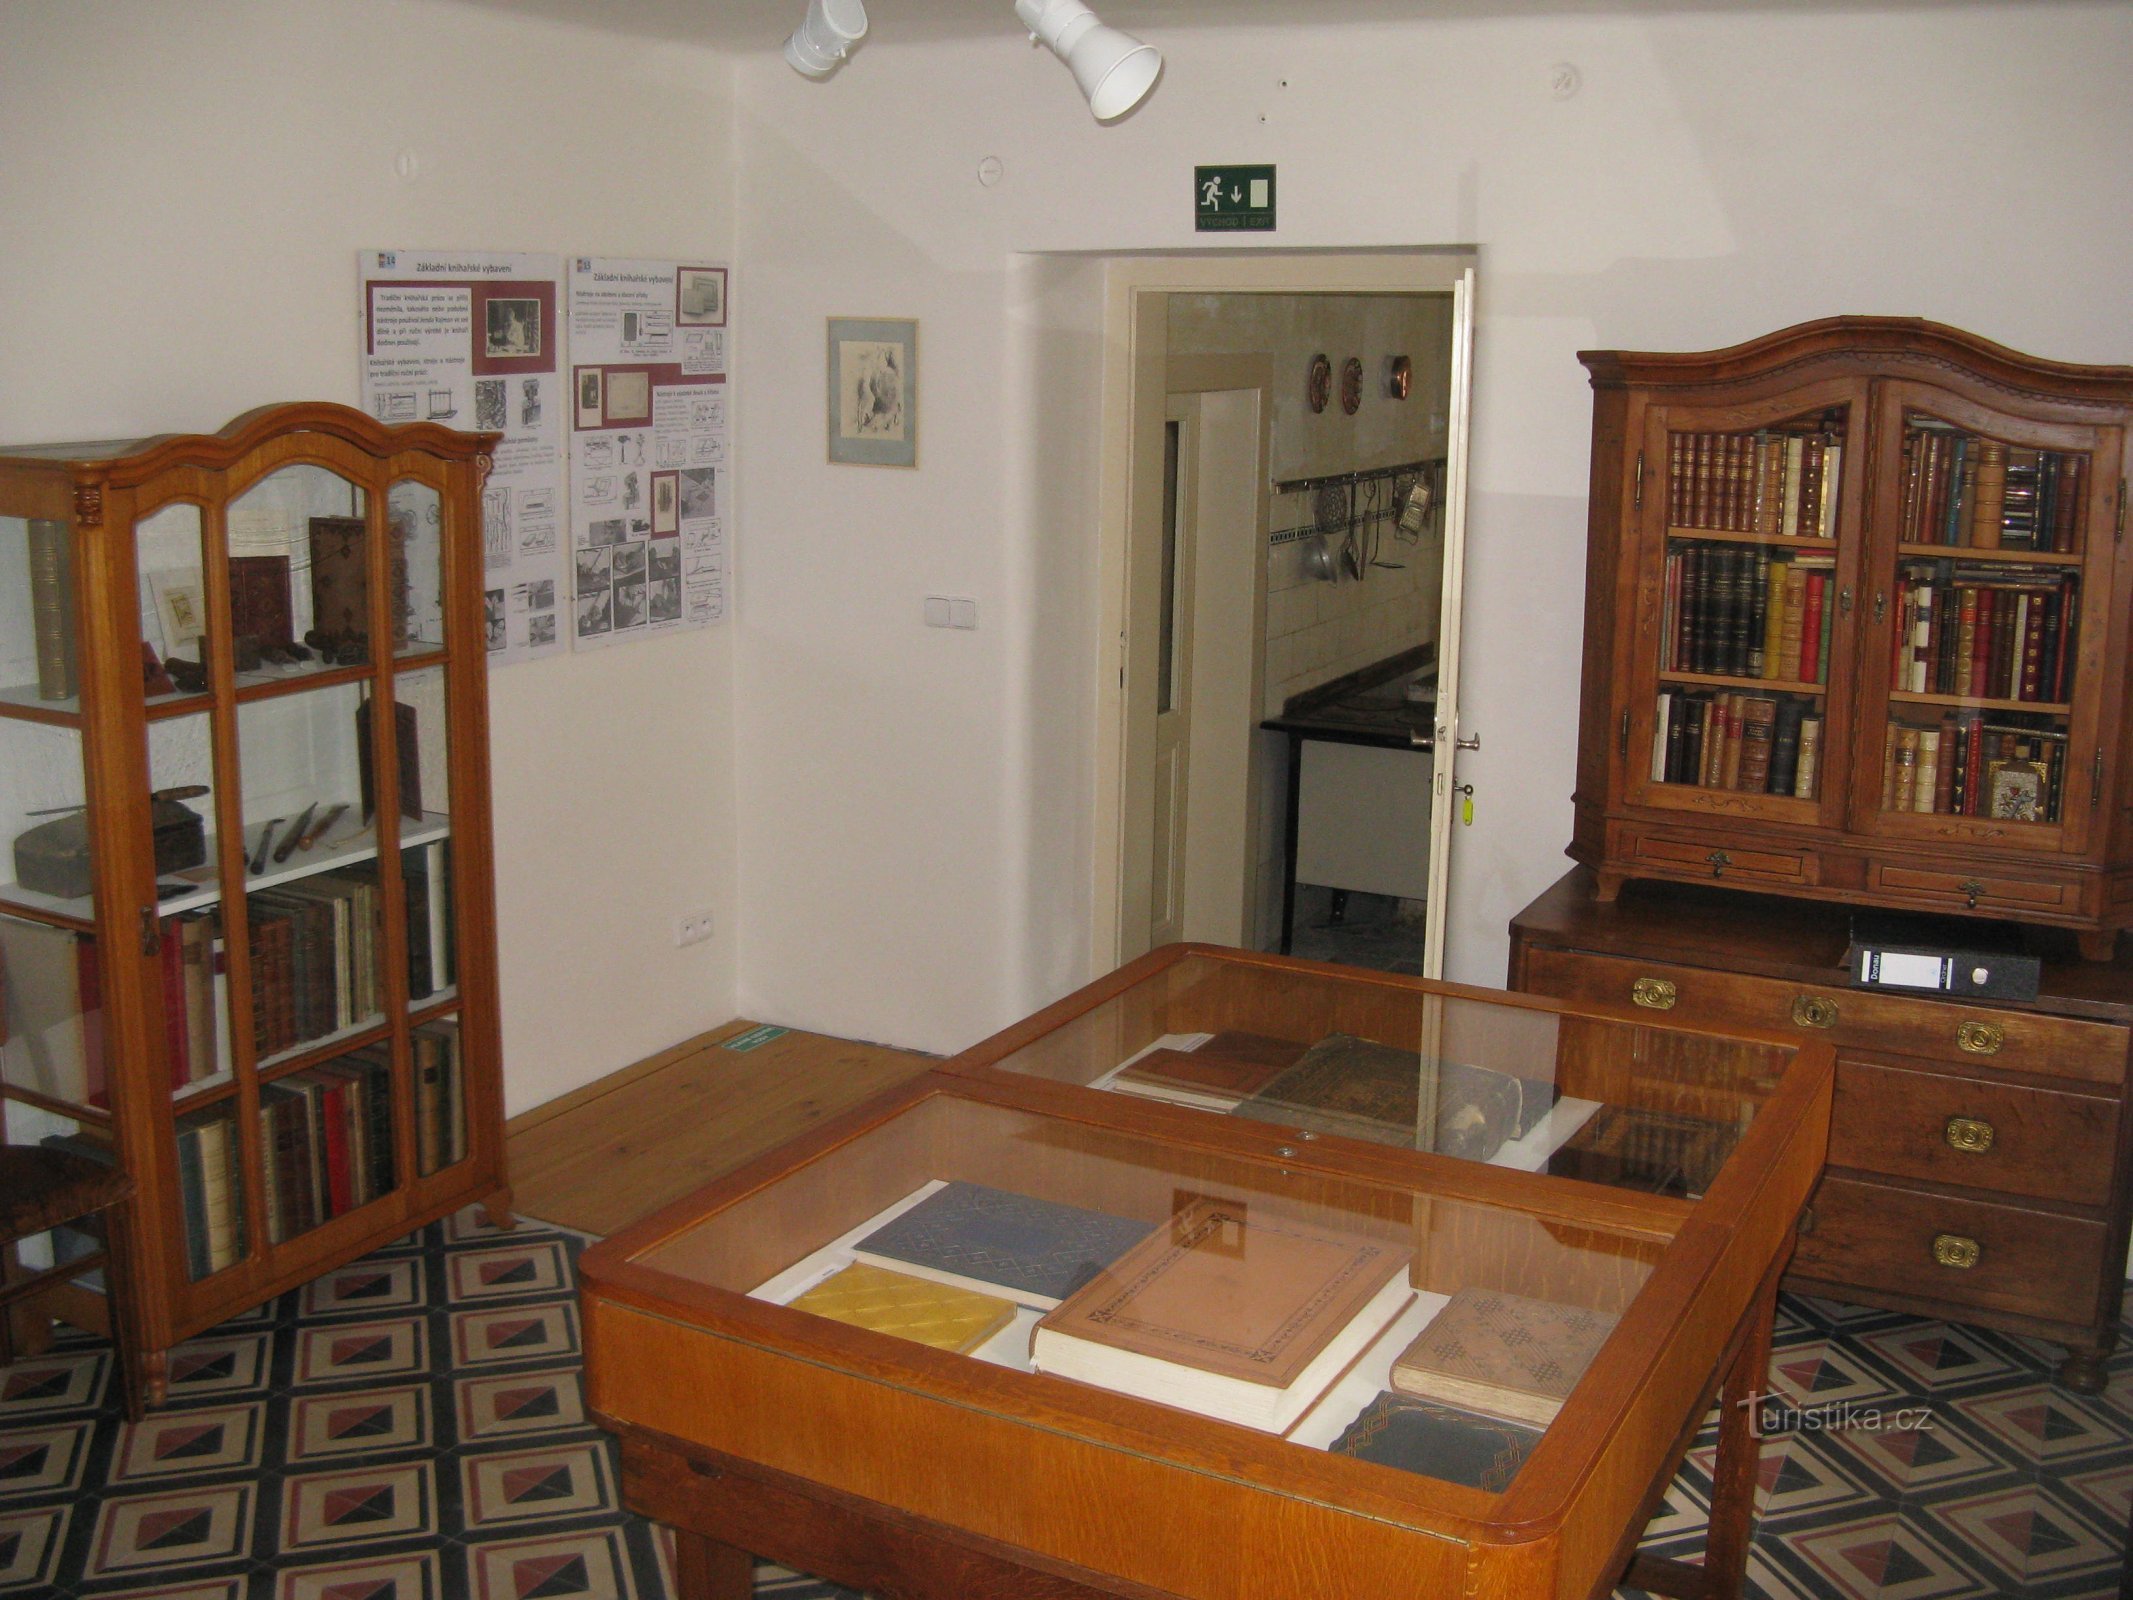 Μουσείο κλασικής στοιχηματικής στο Rožďalovice